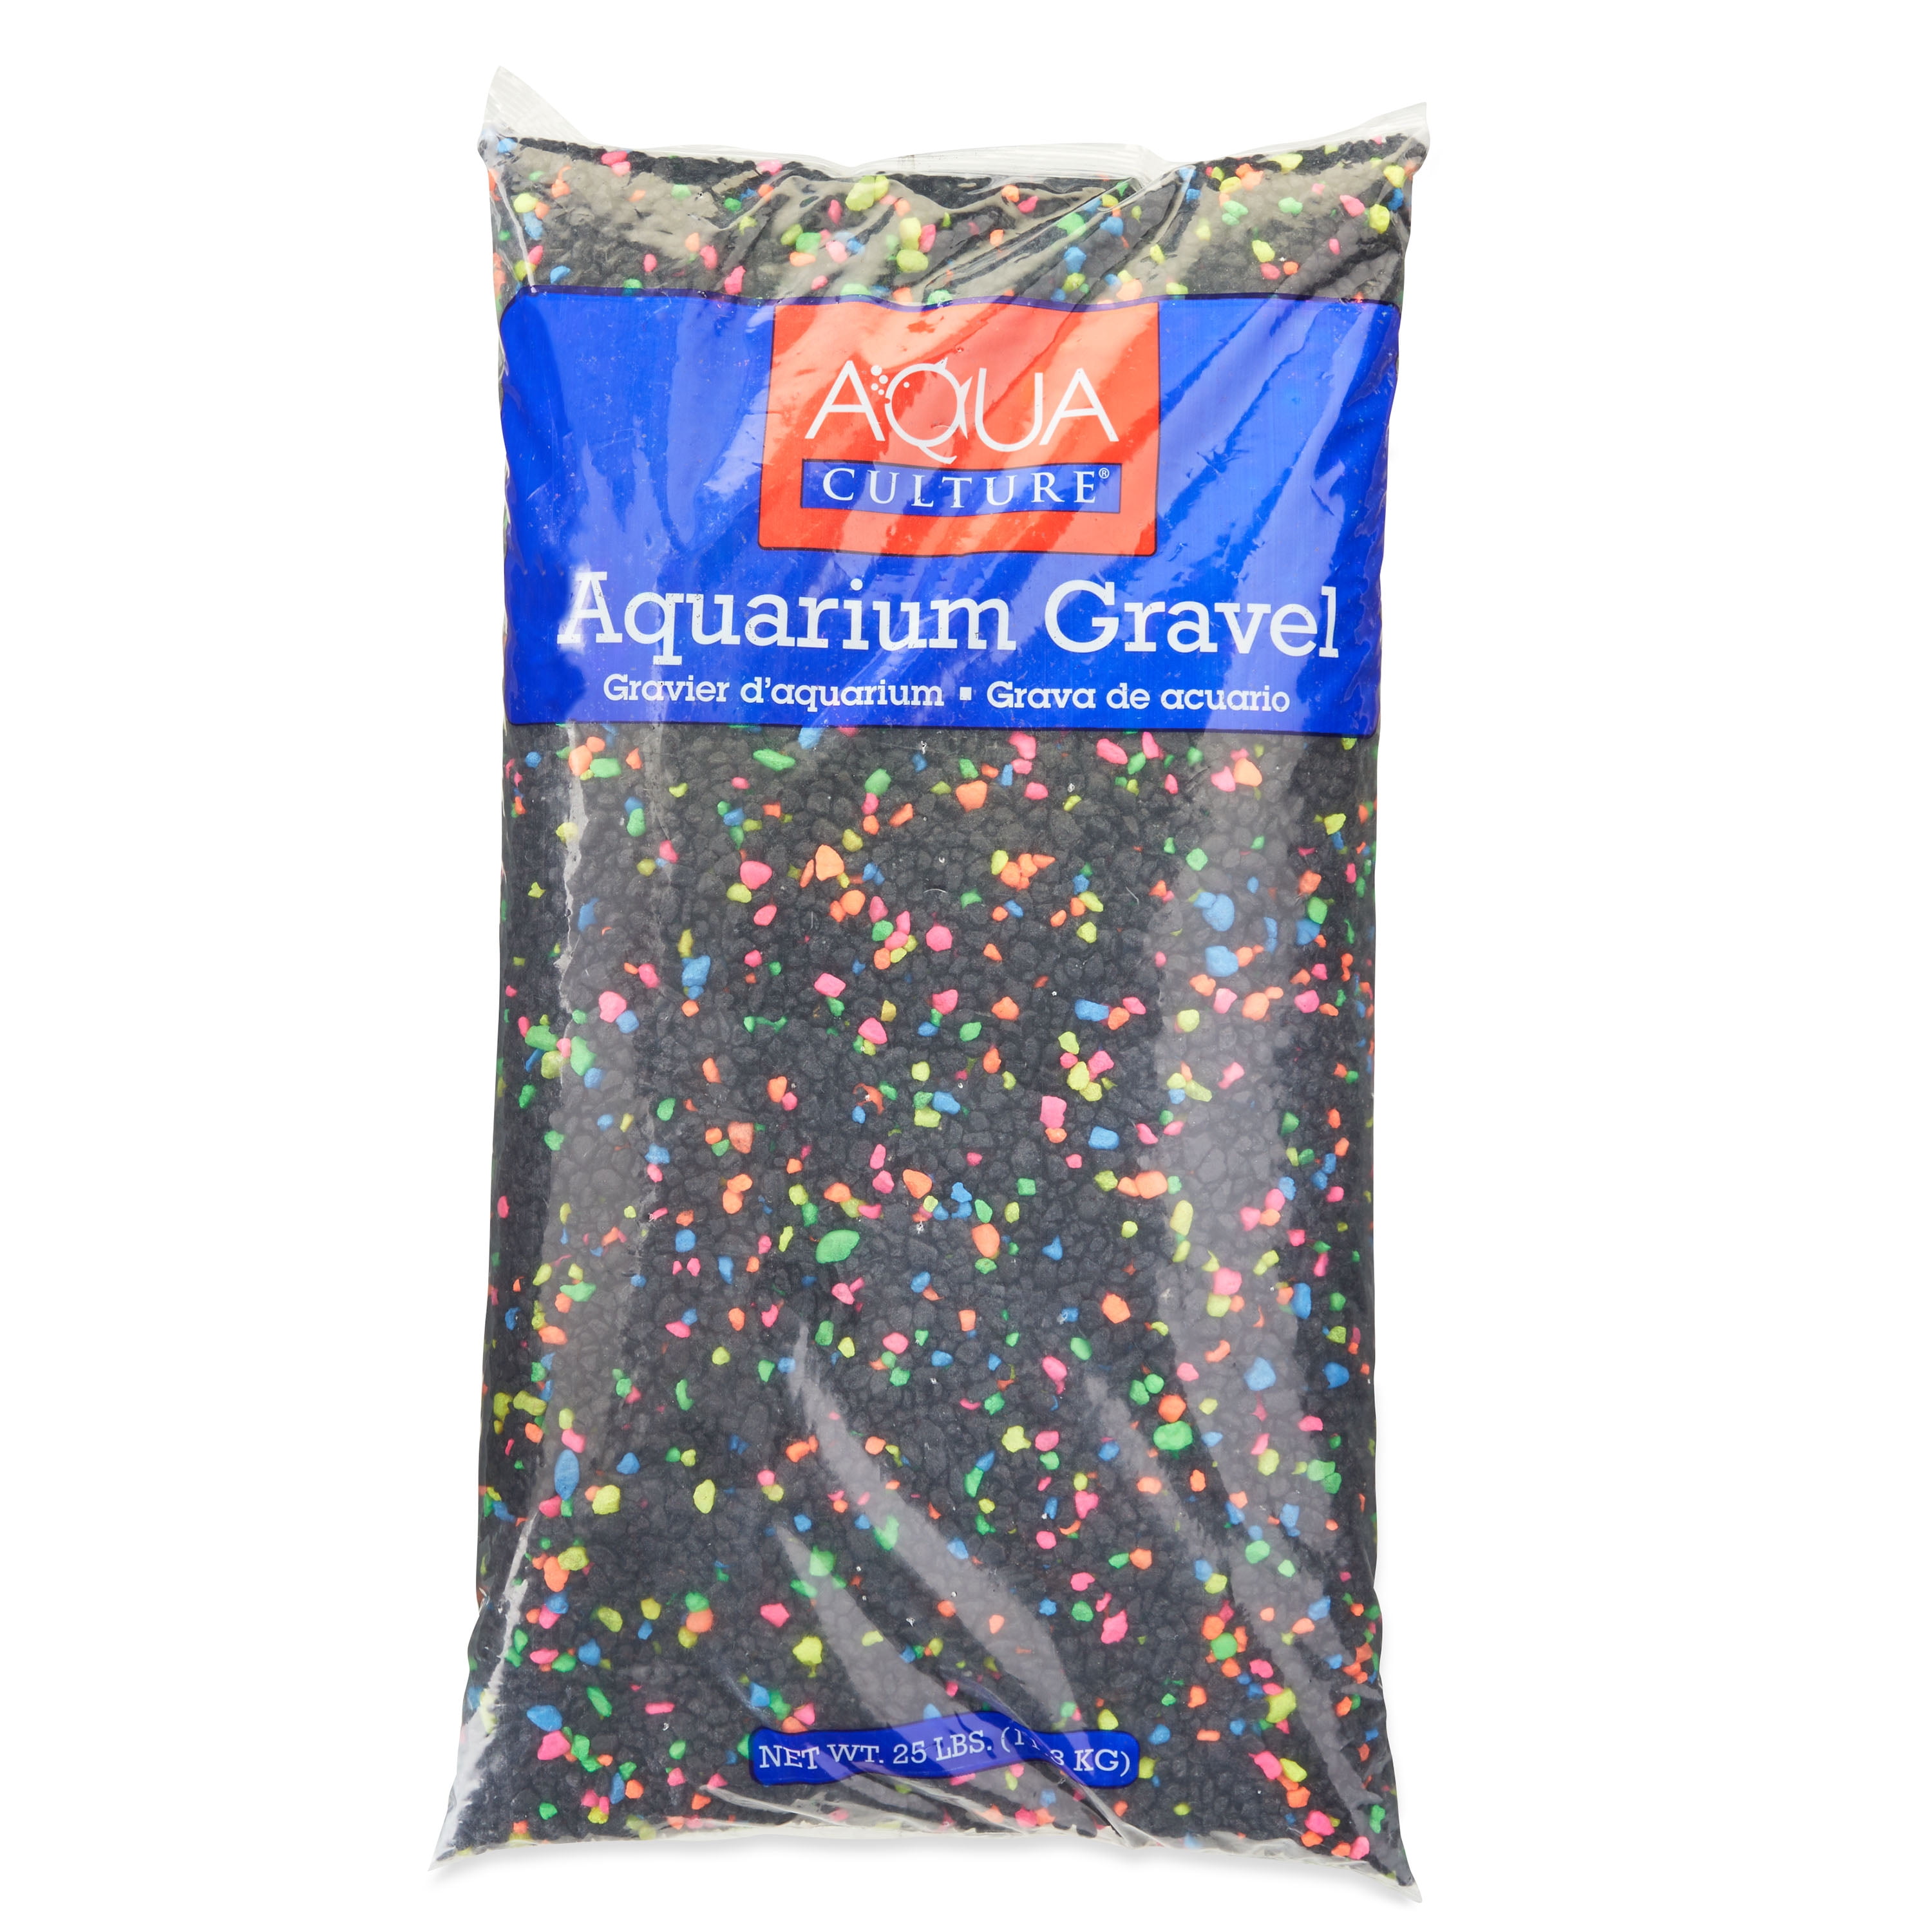 Aqua Culture Aquarium Gravel, Starry Night, 25 lb